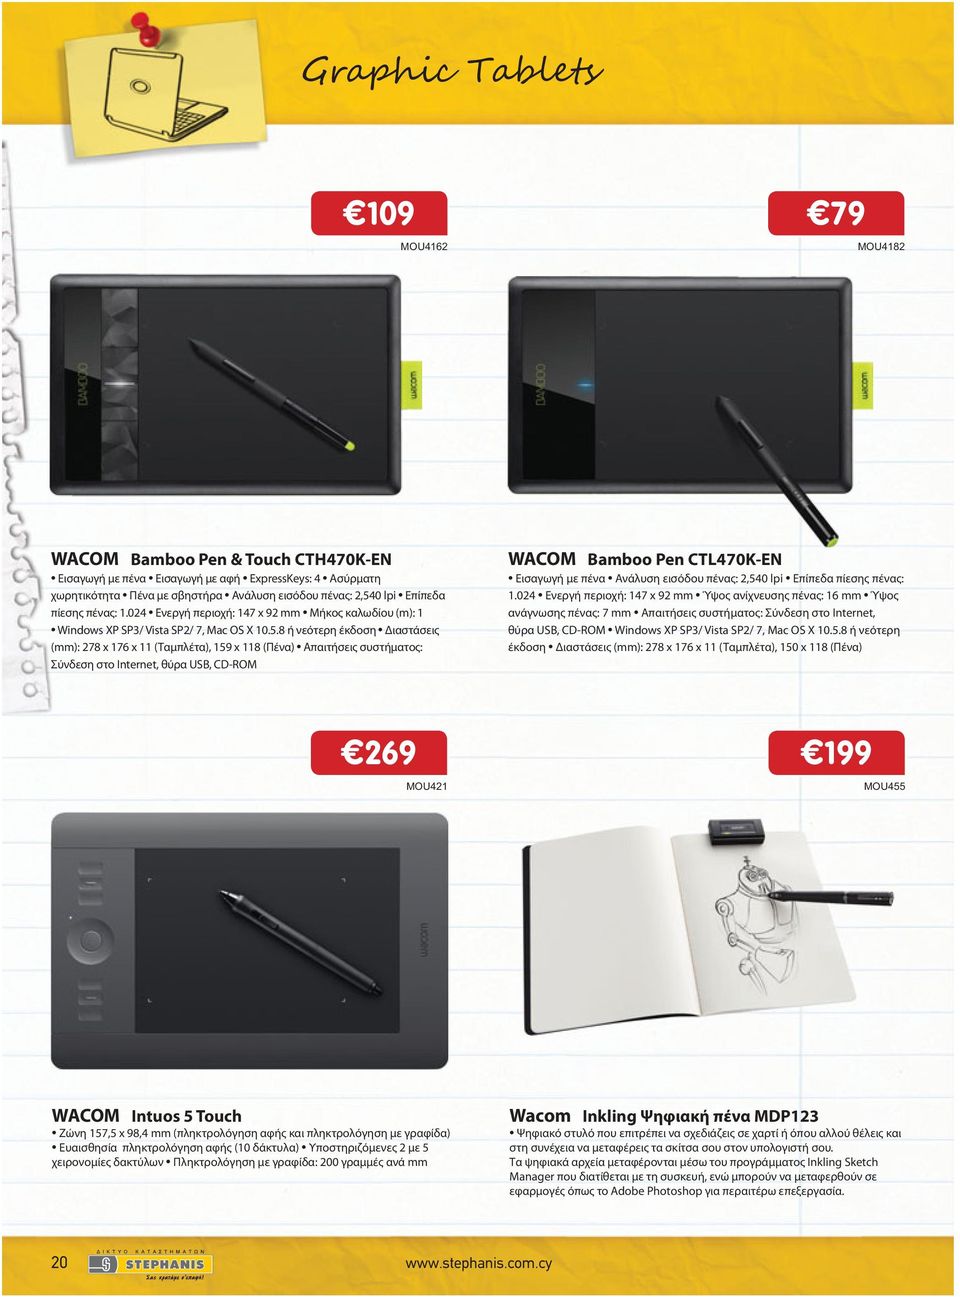 8 ή νεότερη έκδοση Διαστάσεις (mm): 278 x 176 x 11 (Ταμπλέτα), 159 x 118 (Πένα) Απαιτήσεις συστήματος: Σύνδεση στο Internet, θύρα USB, CD-ROM WACOM Bamboo Pen CTL470K-EN Εισαγωγή με πένα Ανάλυση